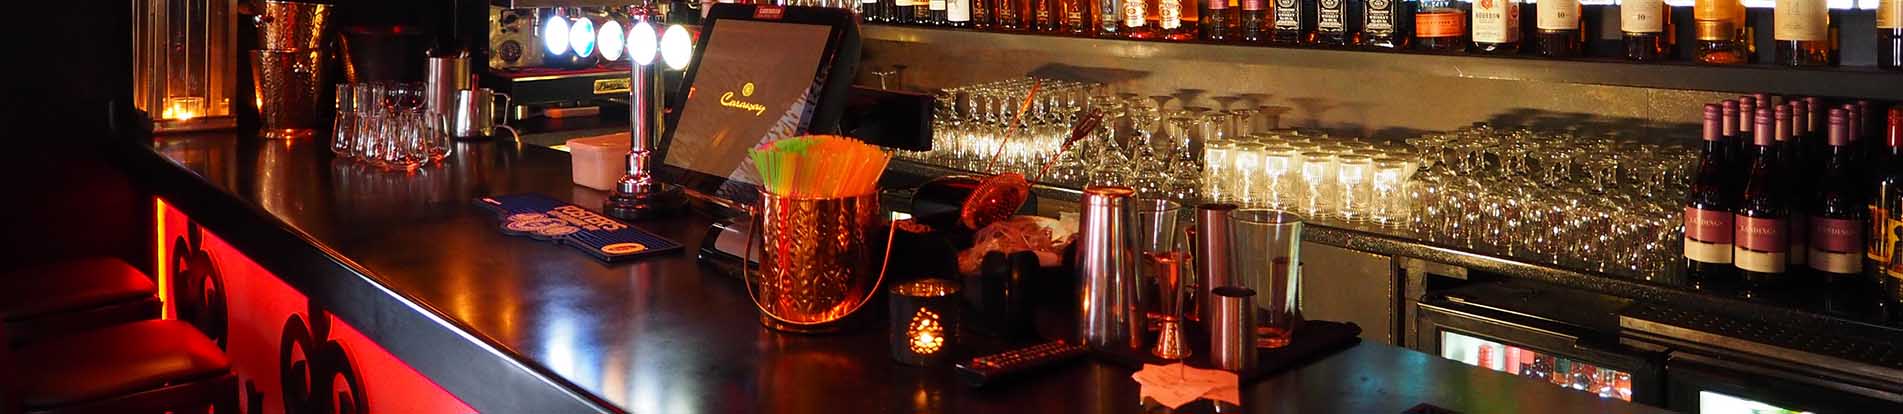 Top 5 Premium Cocktail Bars In Australia